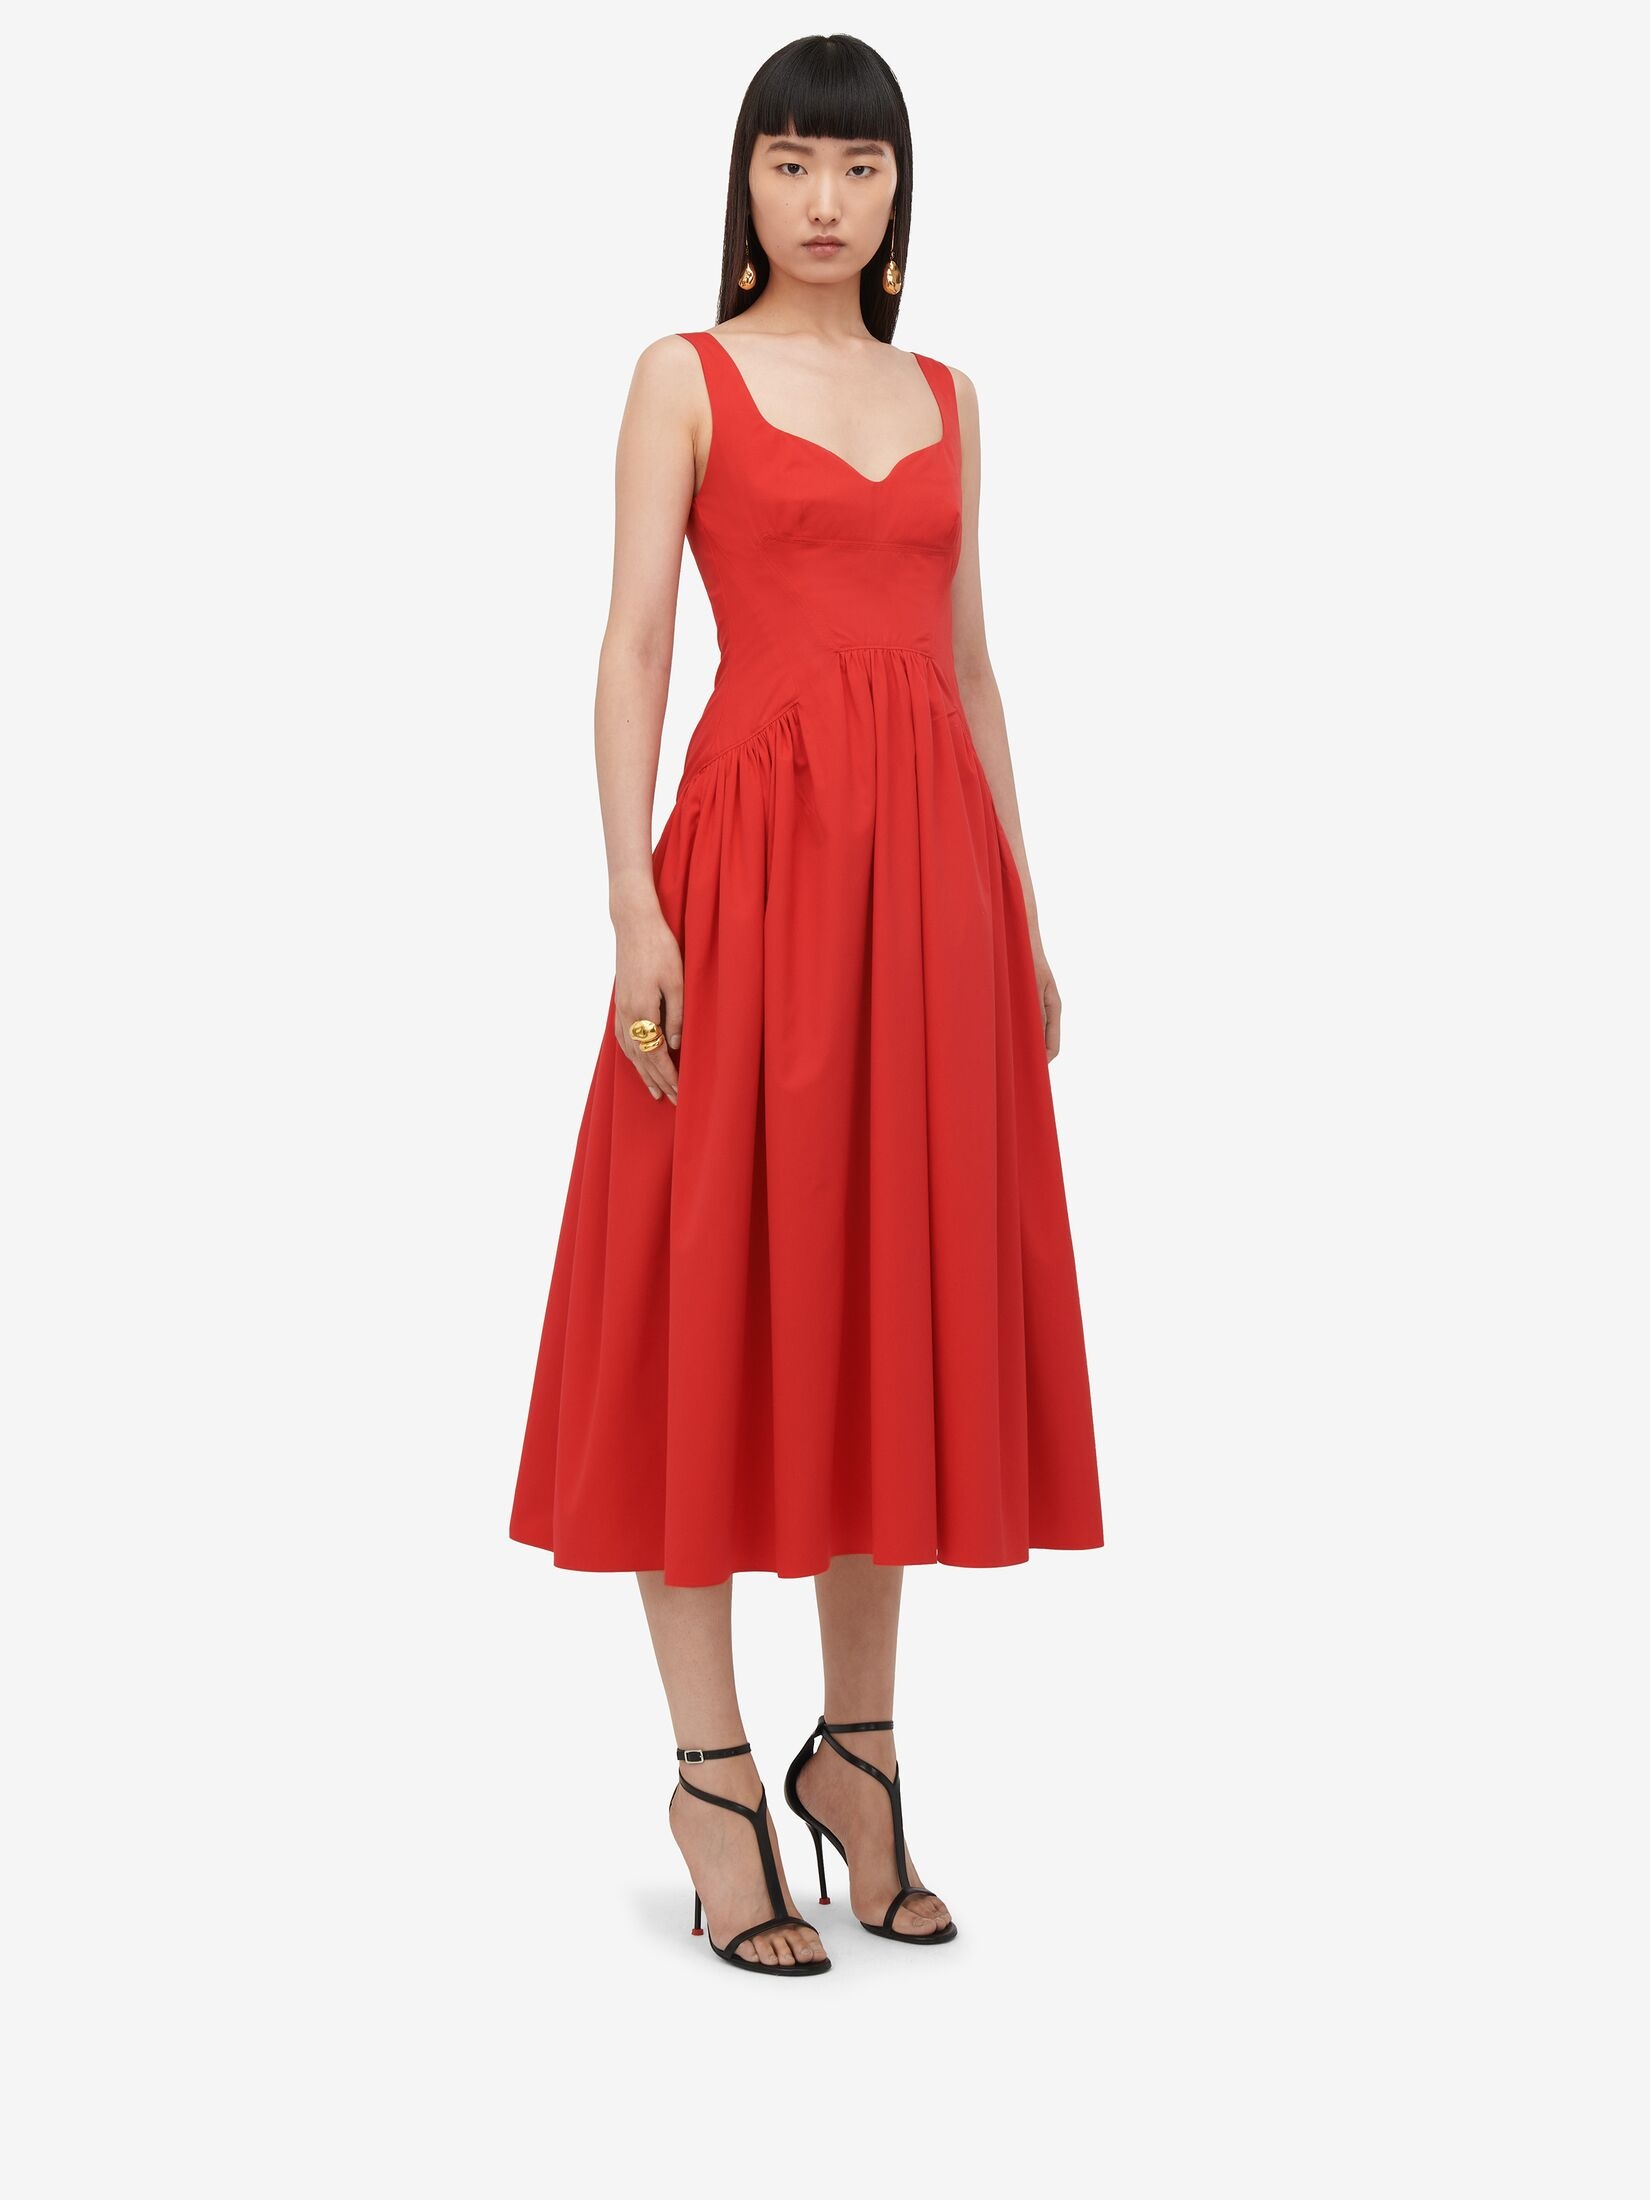 Women's Sweetheart Neckline Midi Dress in Lust Red - 3